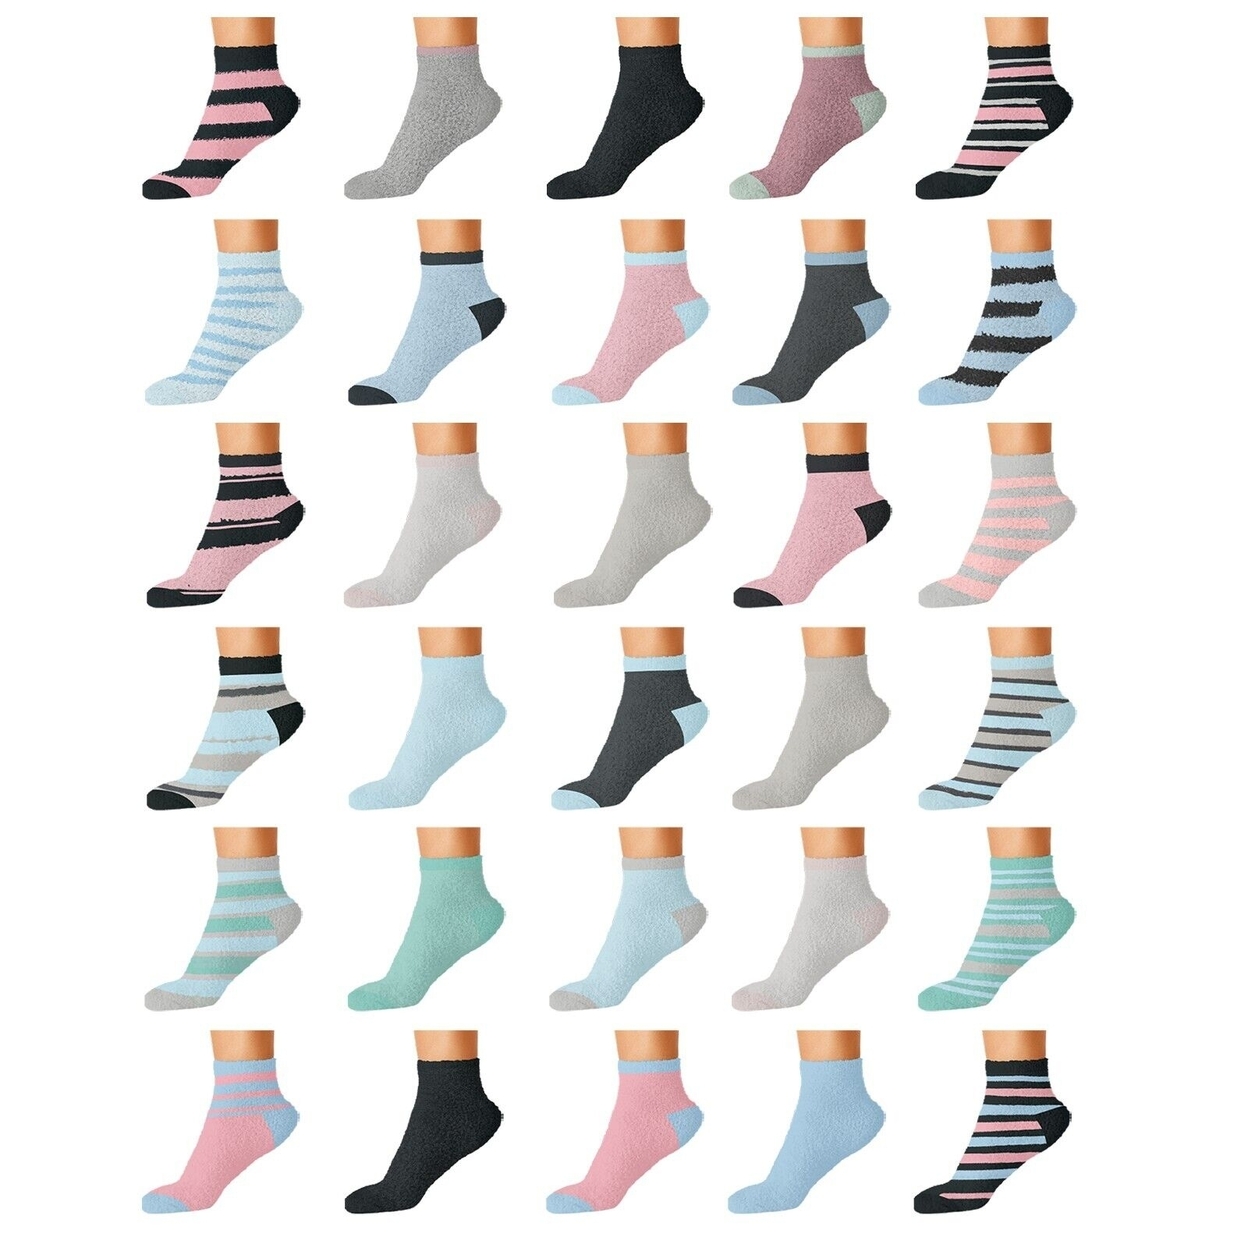 20-Pairs: Women's Cozy Warm Fuzzy Fluffy Crew Socks - Solid & Striped